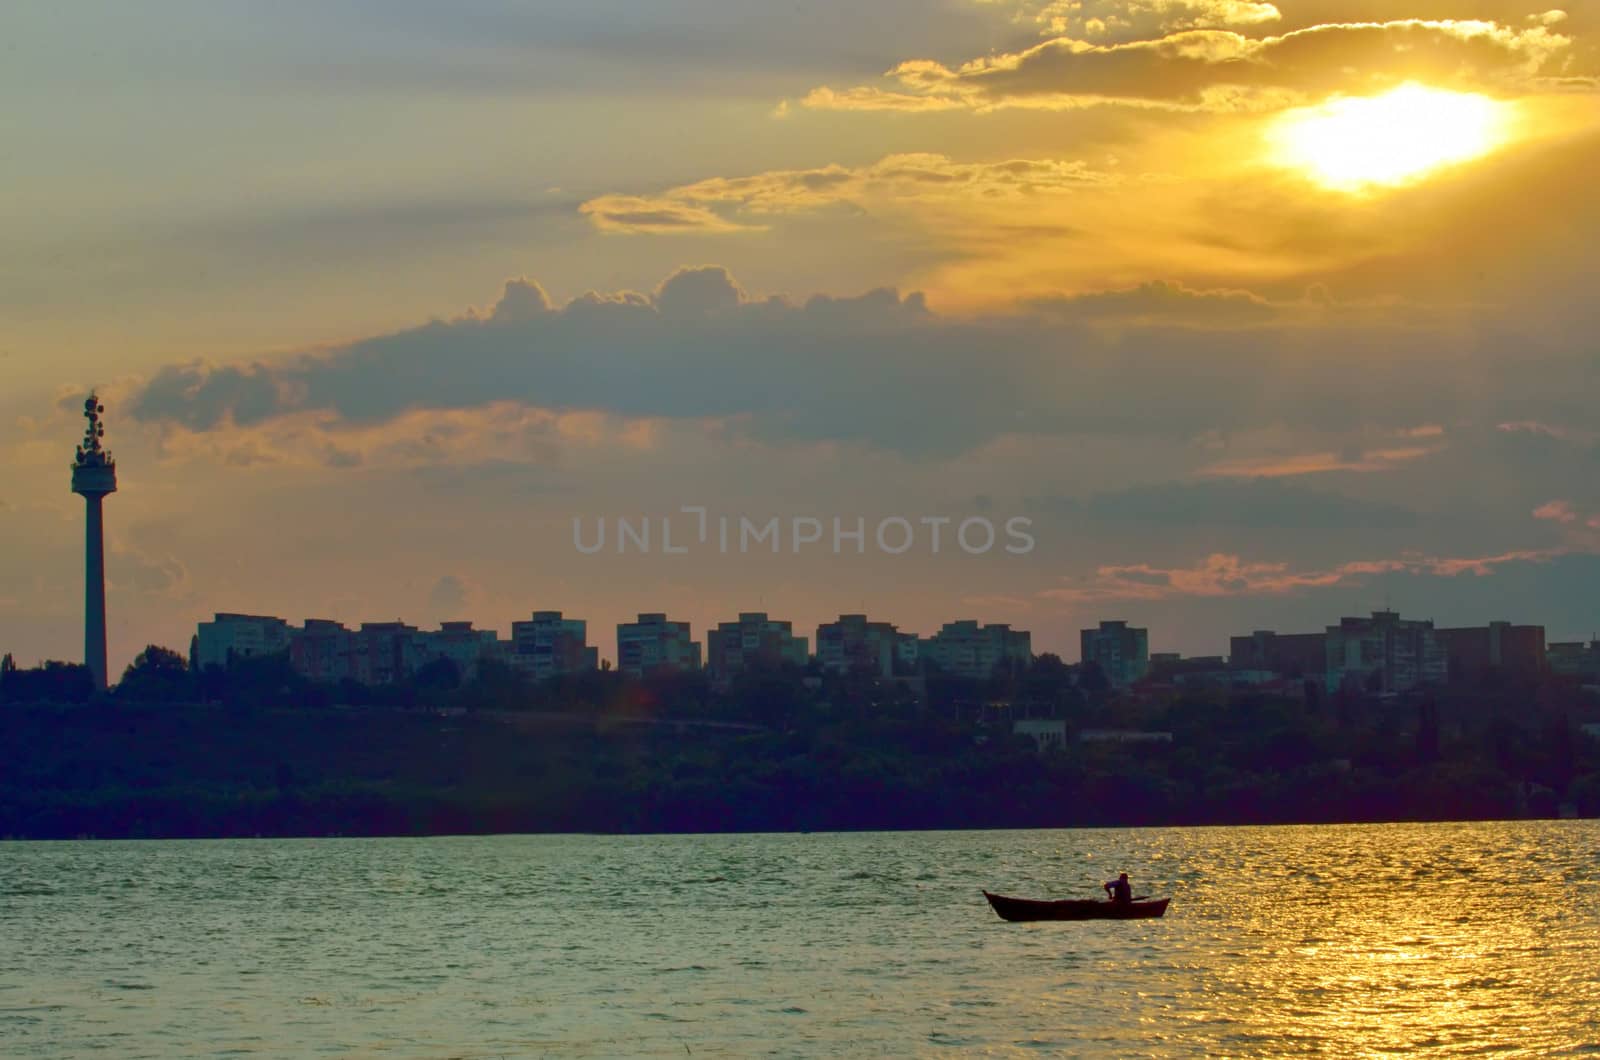 fishermen in boat at sunset on danube river